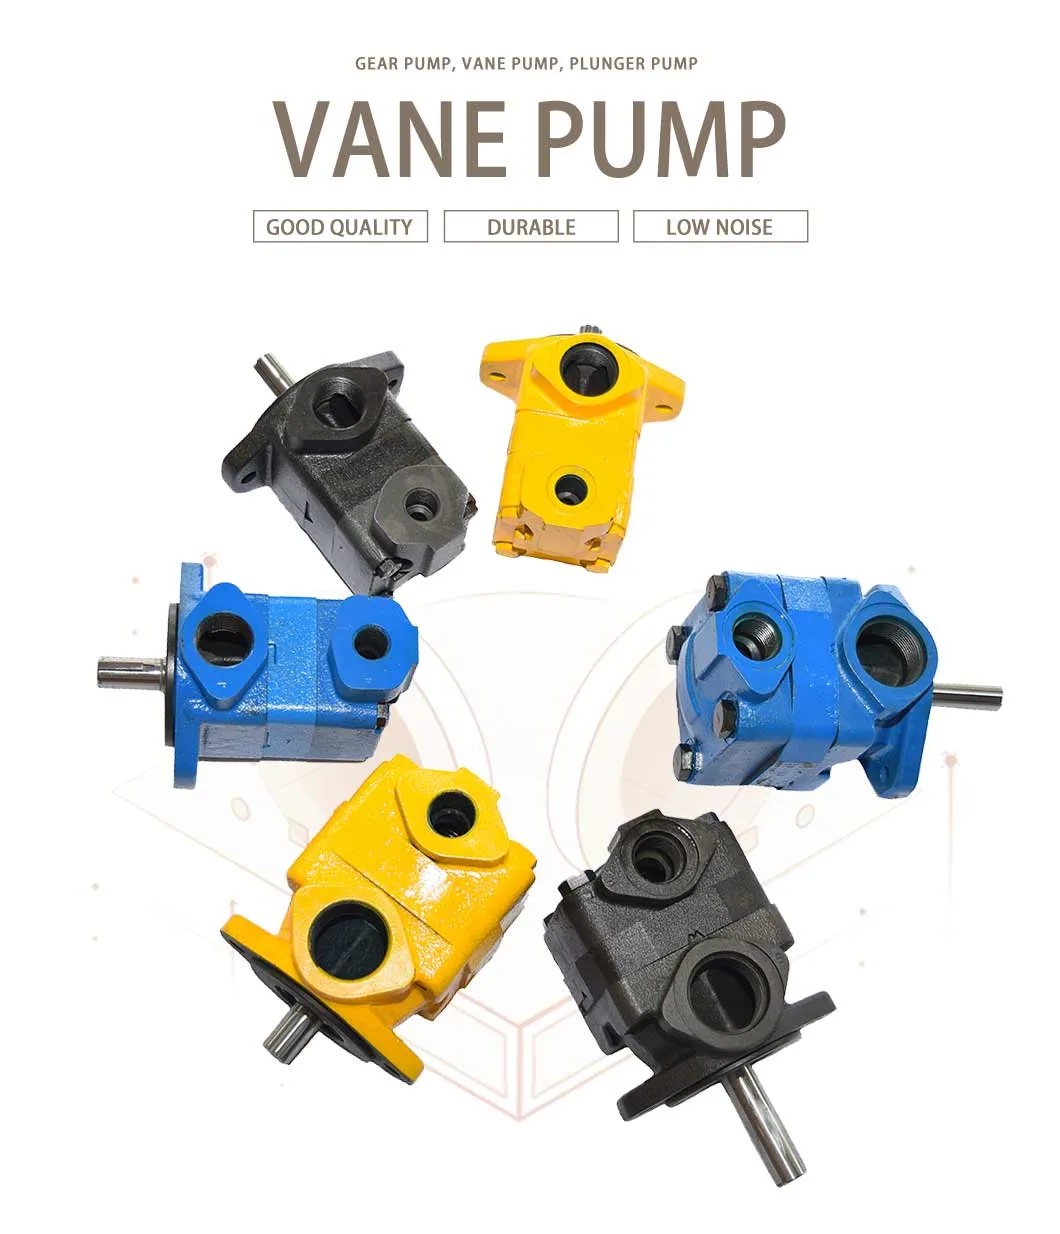 High Pressure Hydraulic Gear Pump with Manual Control